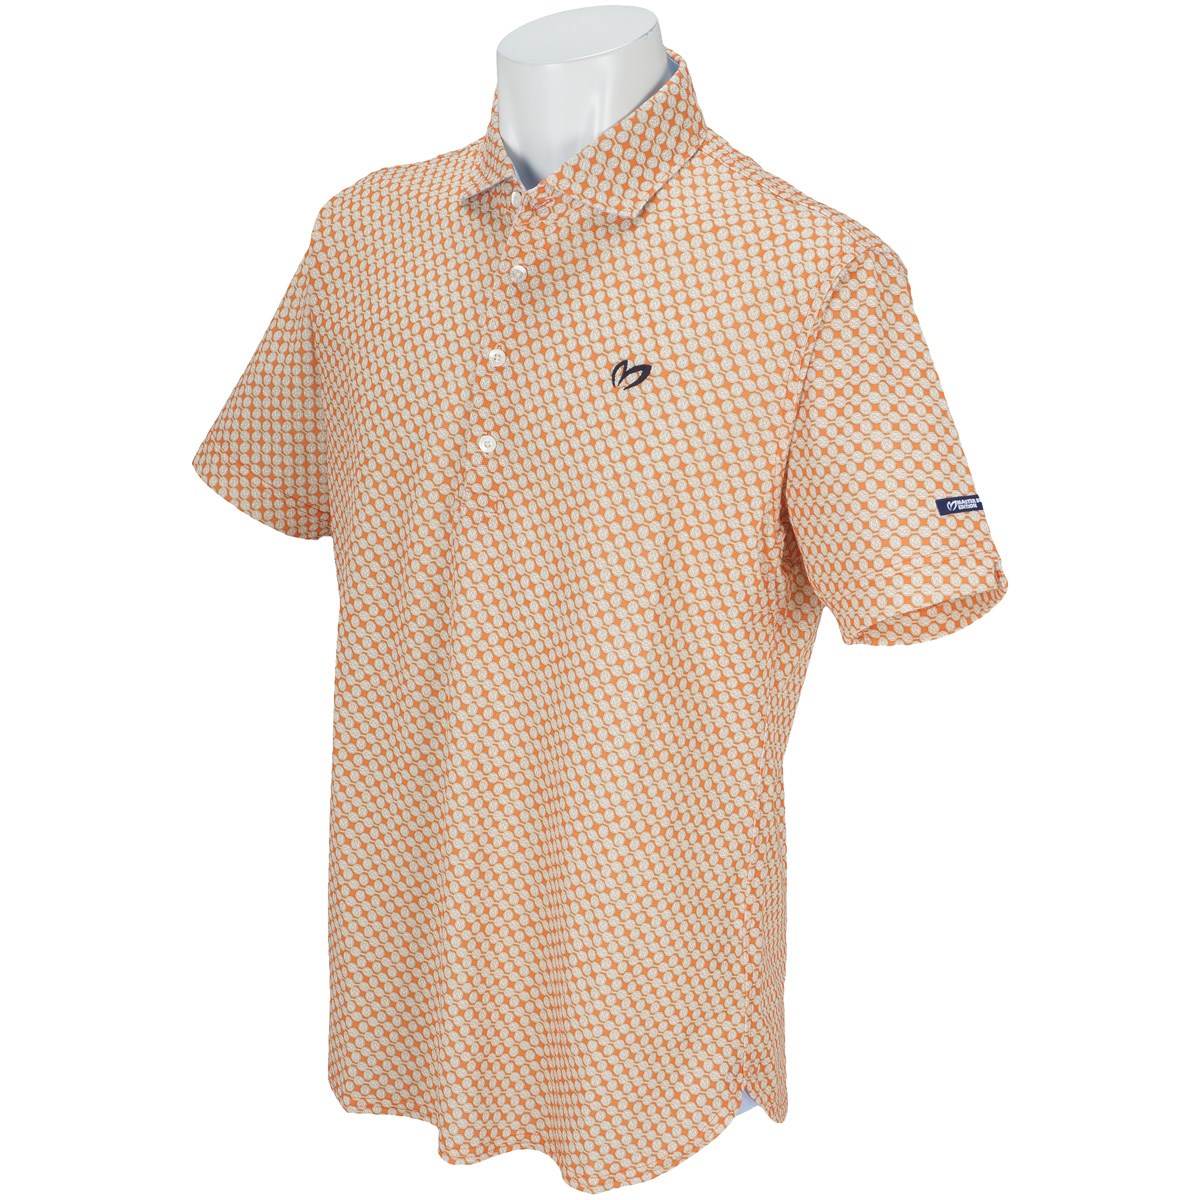  [値下げしました] マスターバニーエディション プレミアム TEX MINIR Mマークプリント 半袖ポロシャツ ゴルフウェア